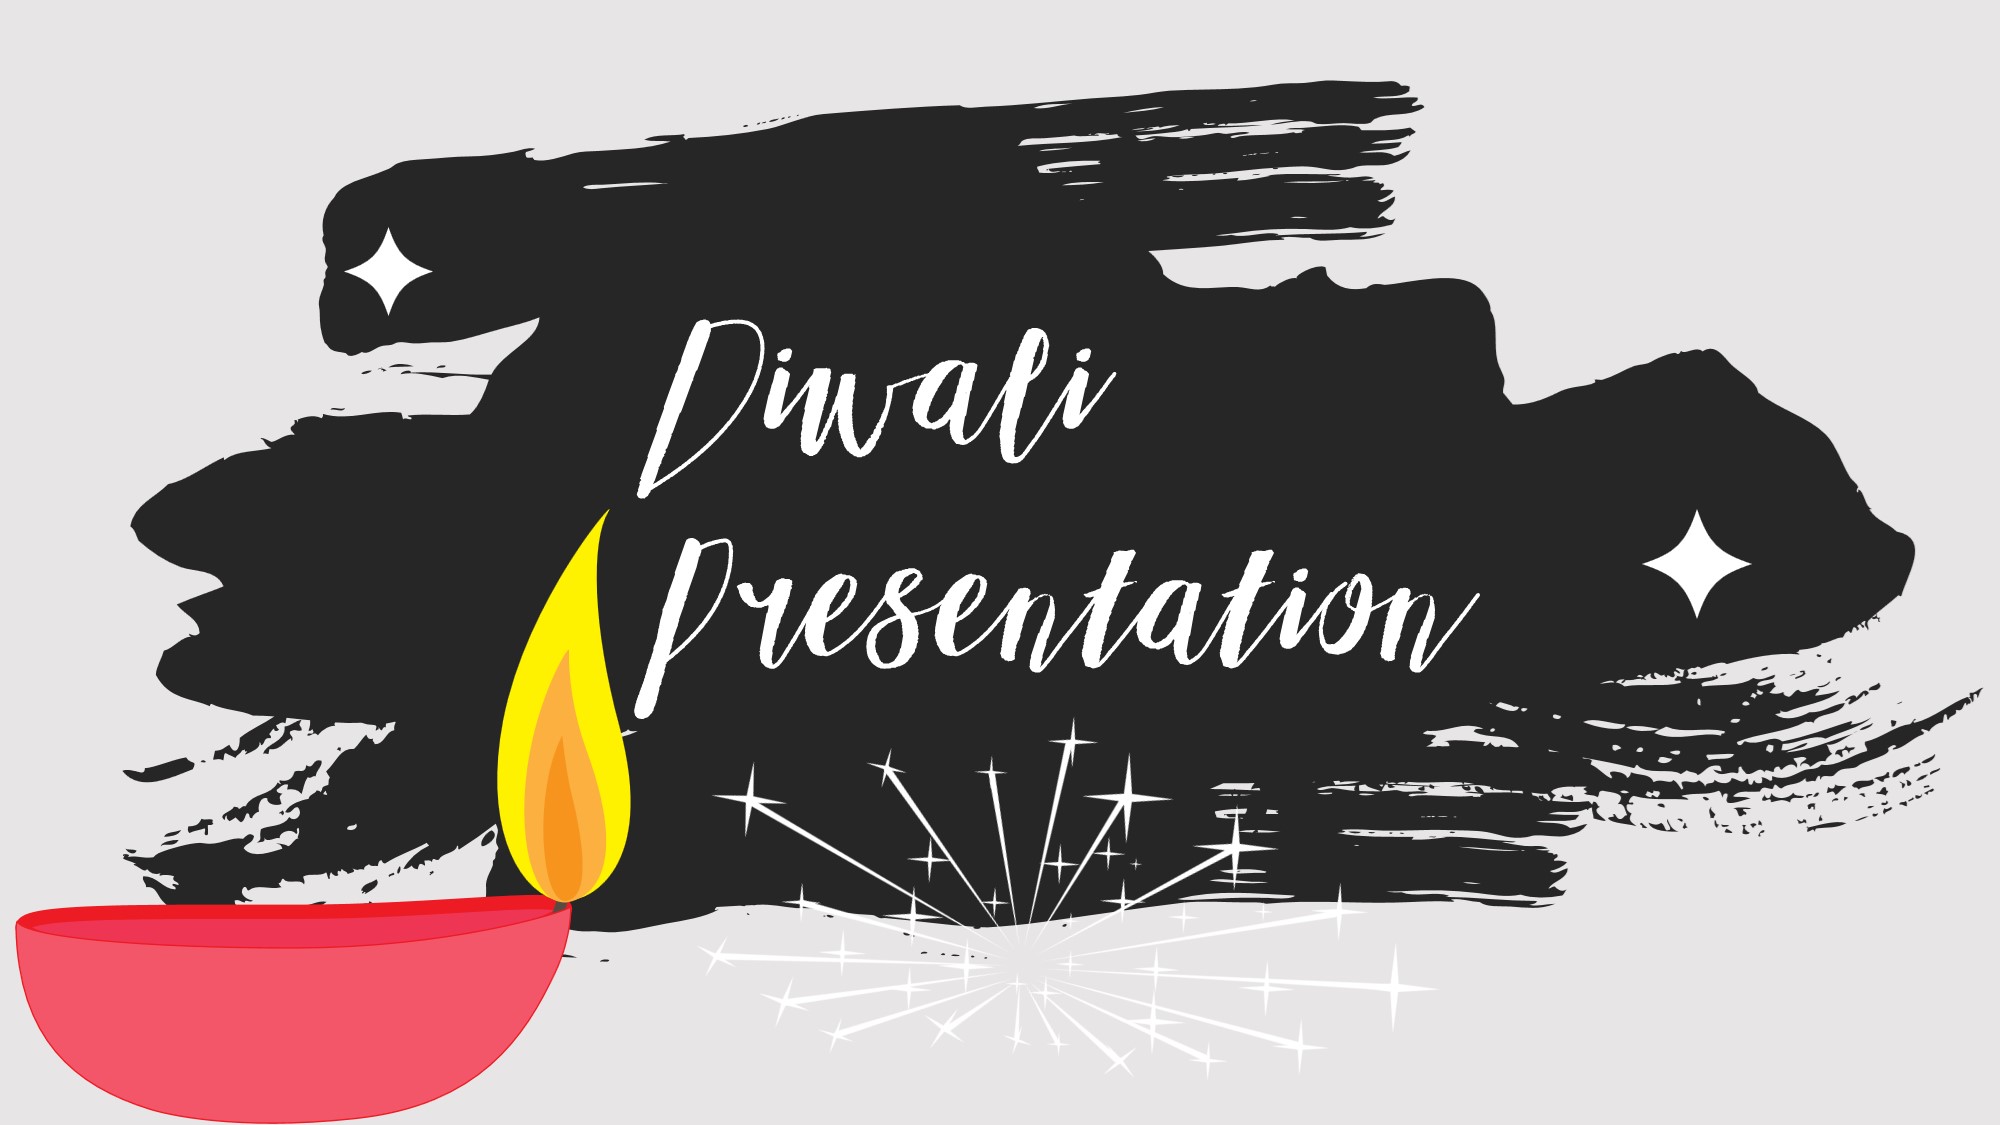 diwali-greetings-powerpoint-template-myfreeslides